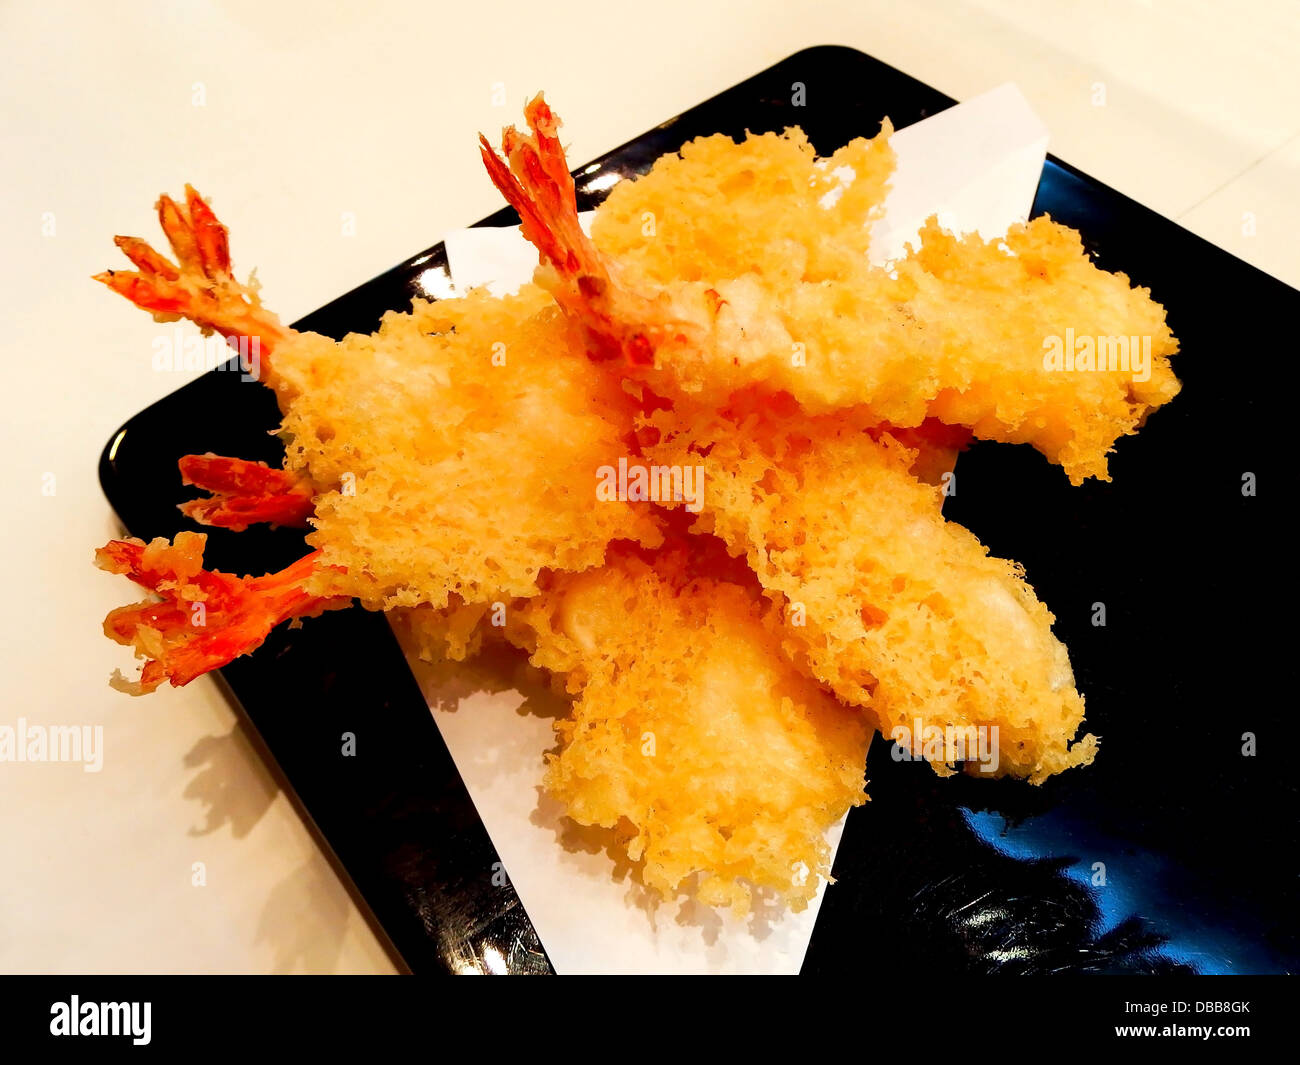 Cuisine japonaise - tempura de crevettes (crevettes frits) Banque D'Images